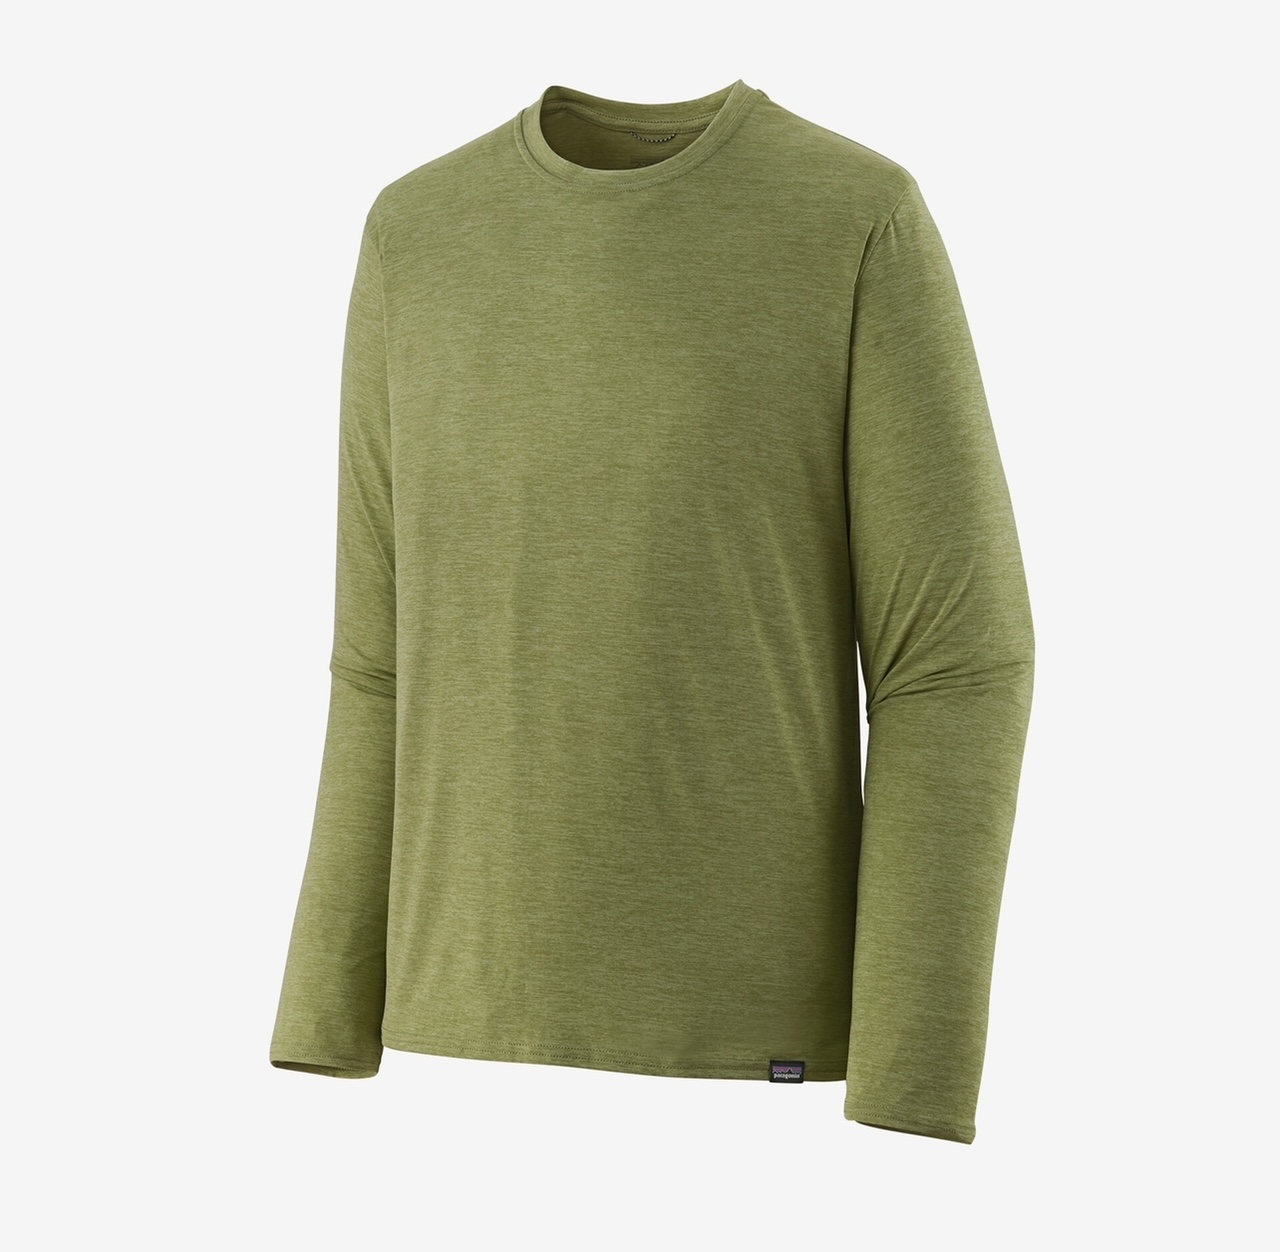 Patagonia M's L/S Capilene Cool Daily Shirt - Buckhorn Green: Light Buckhorn Green X-Dye - Large